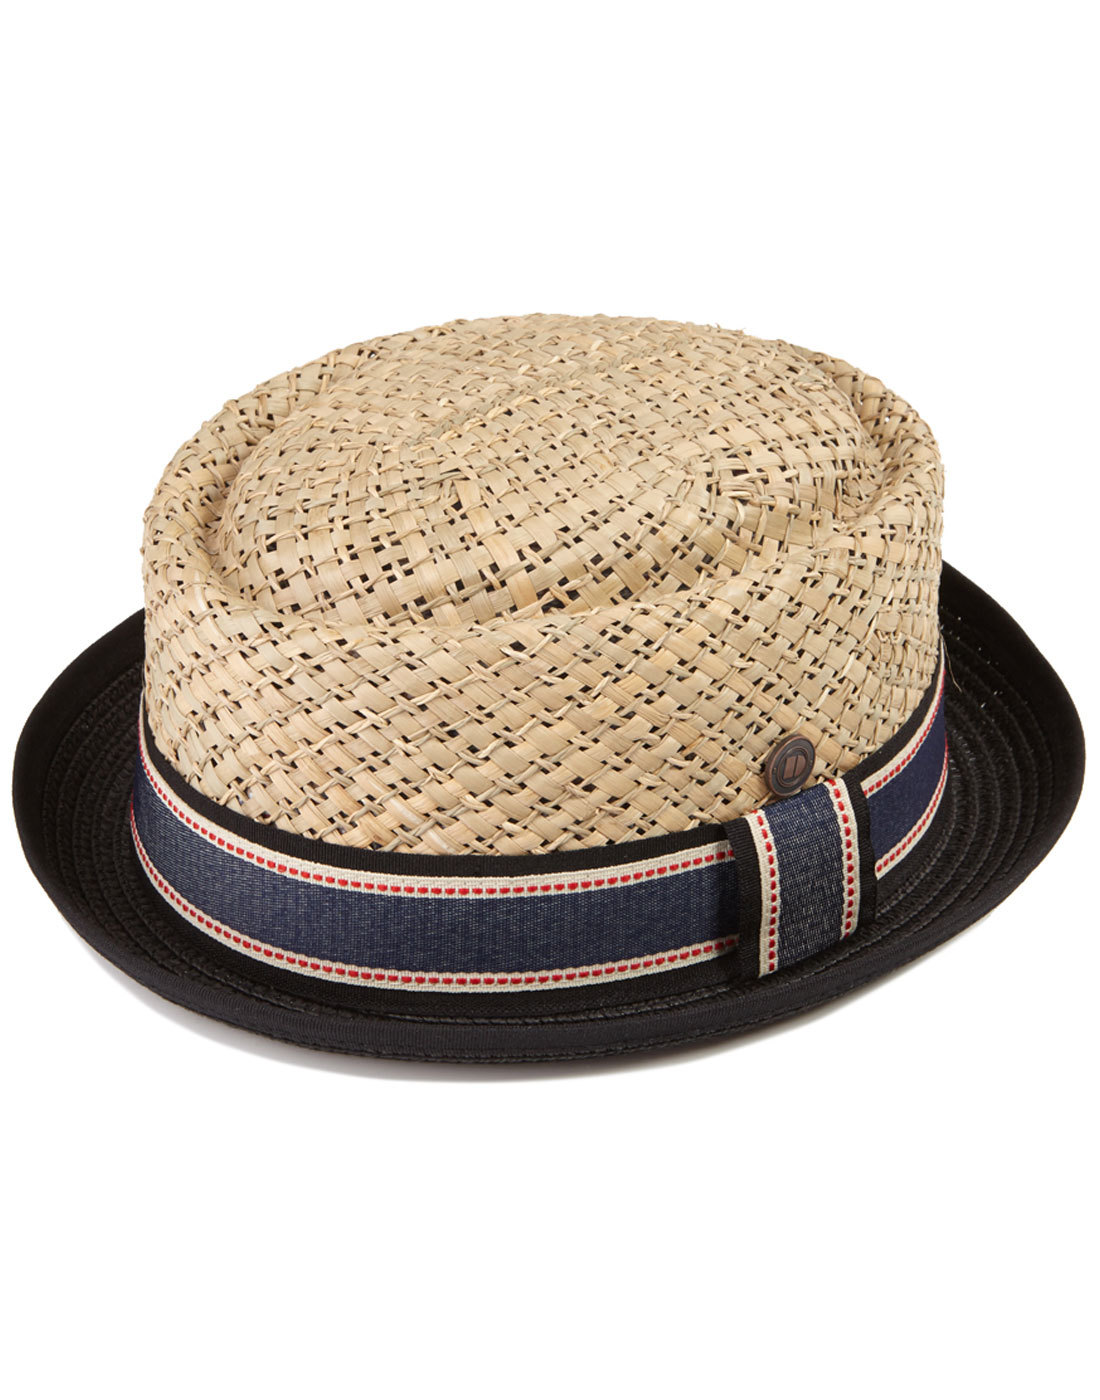 DASMARCA Summer Porkpie Straw Hat